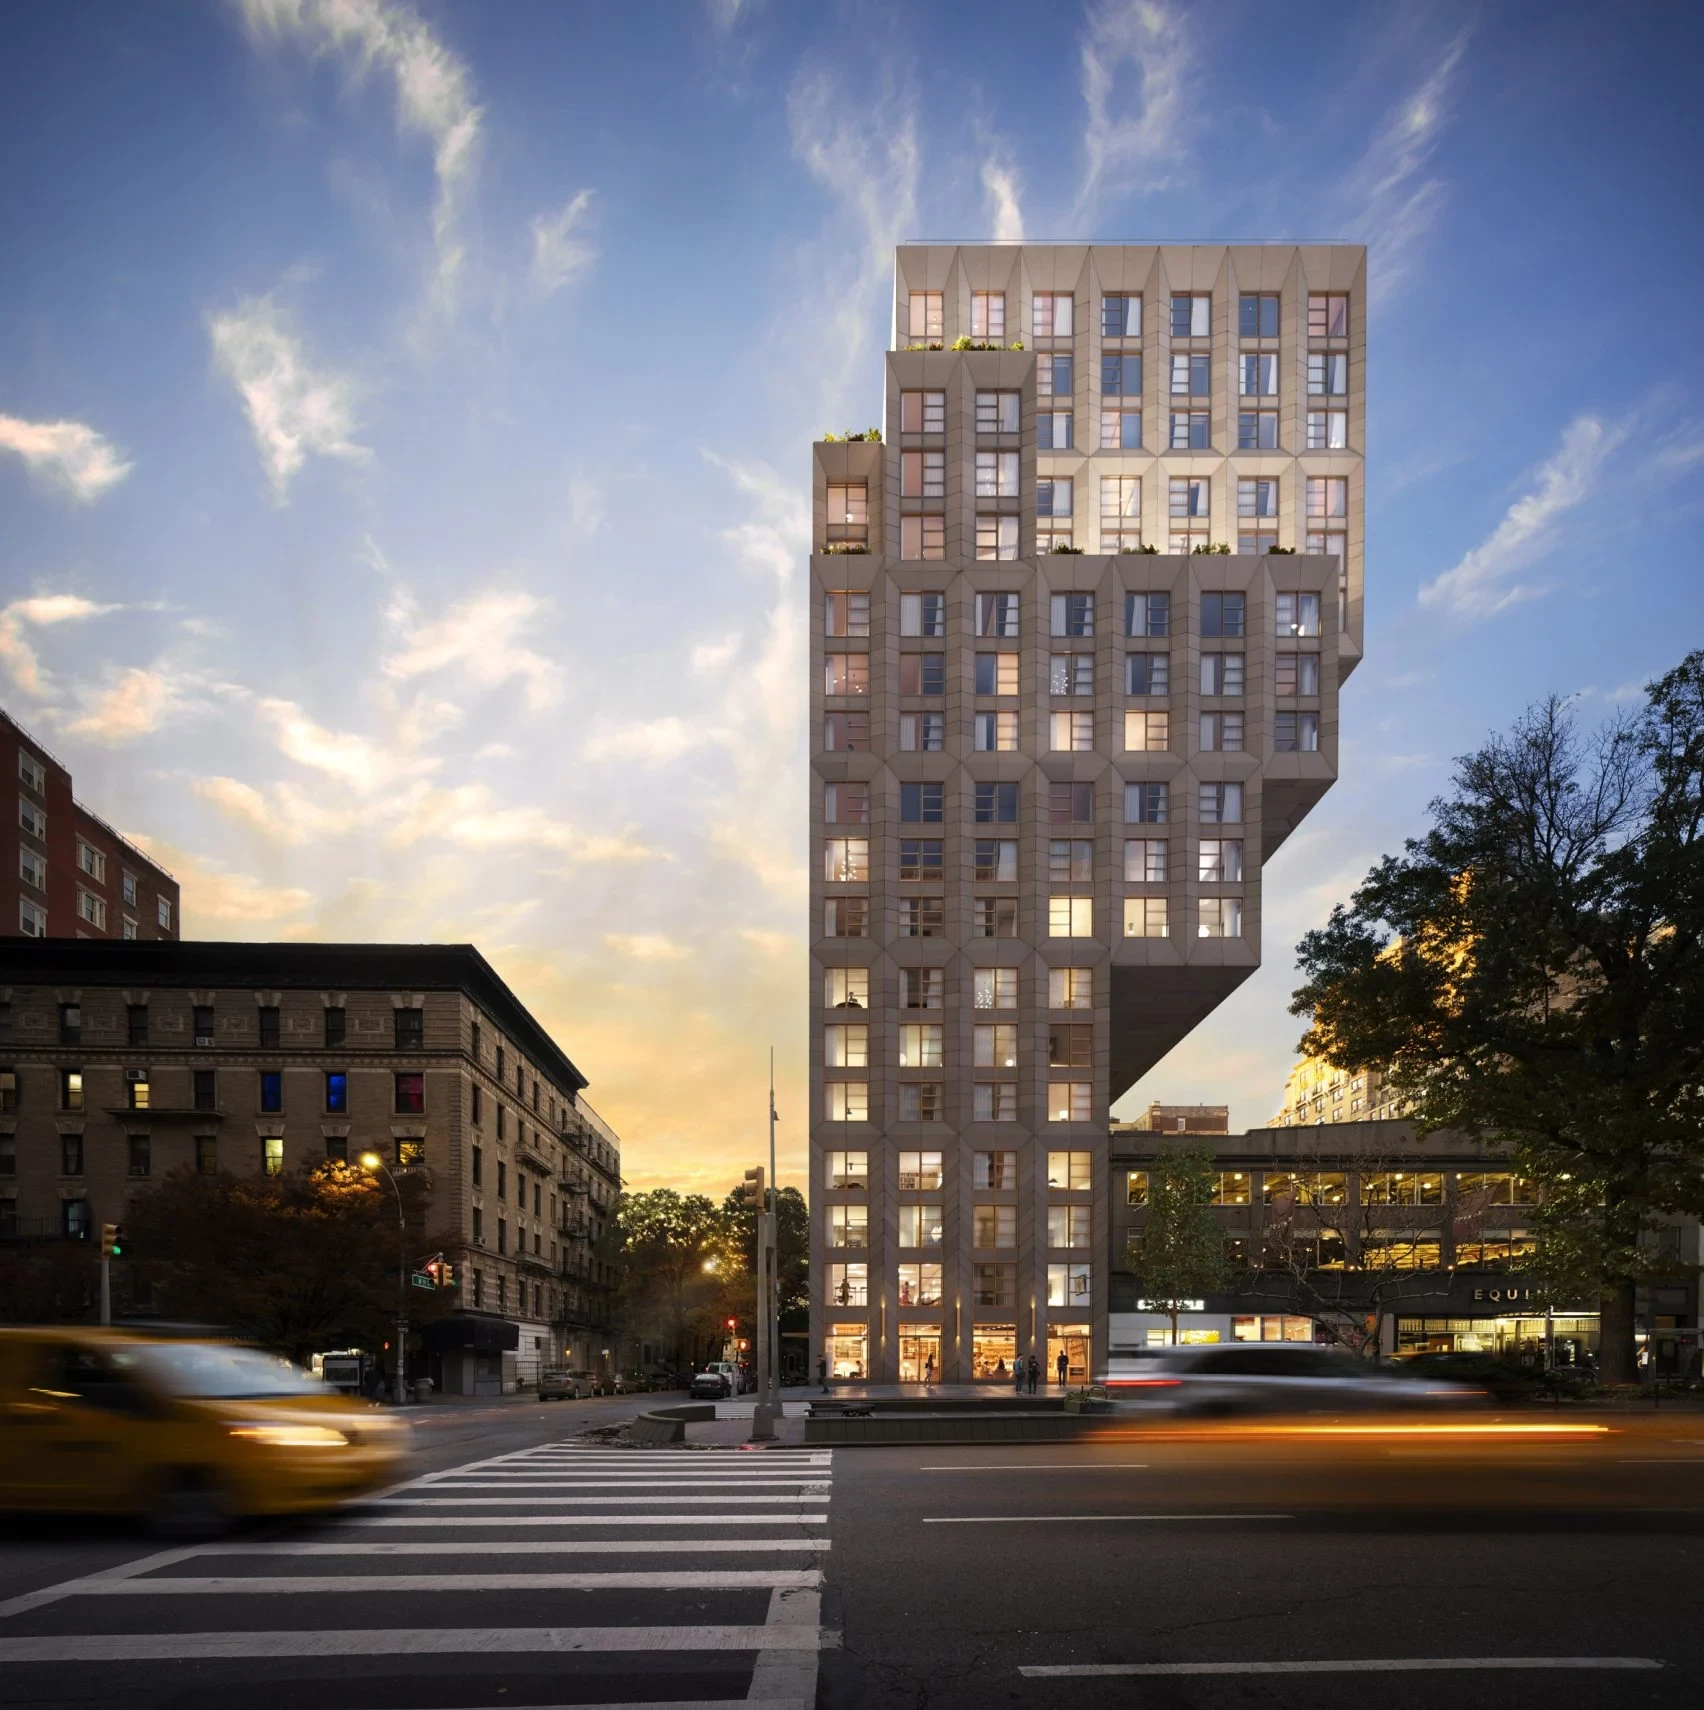 Проект Era - житловий будинок в Манхеттені, консольної форми що розширюється до верху, від ODA